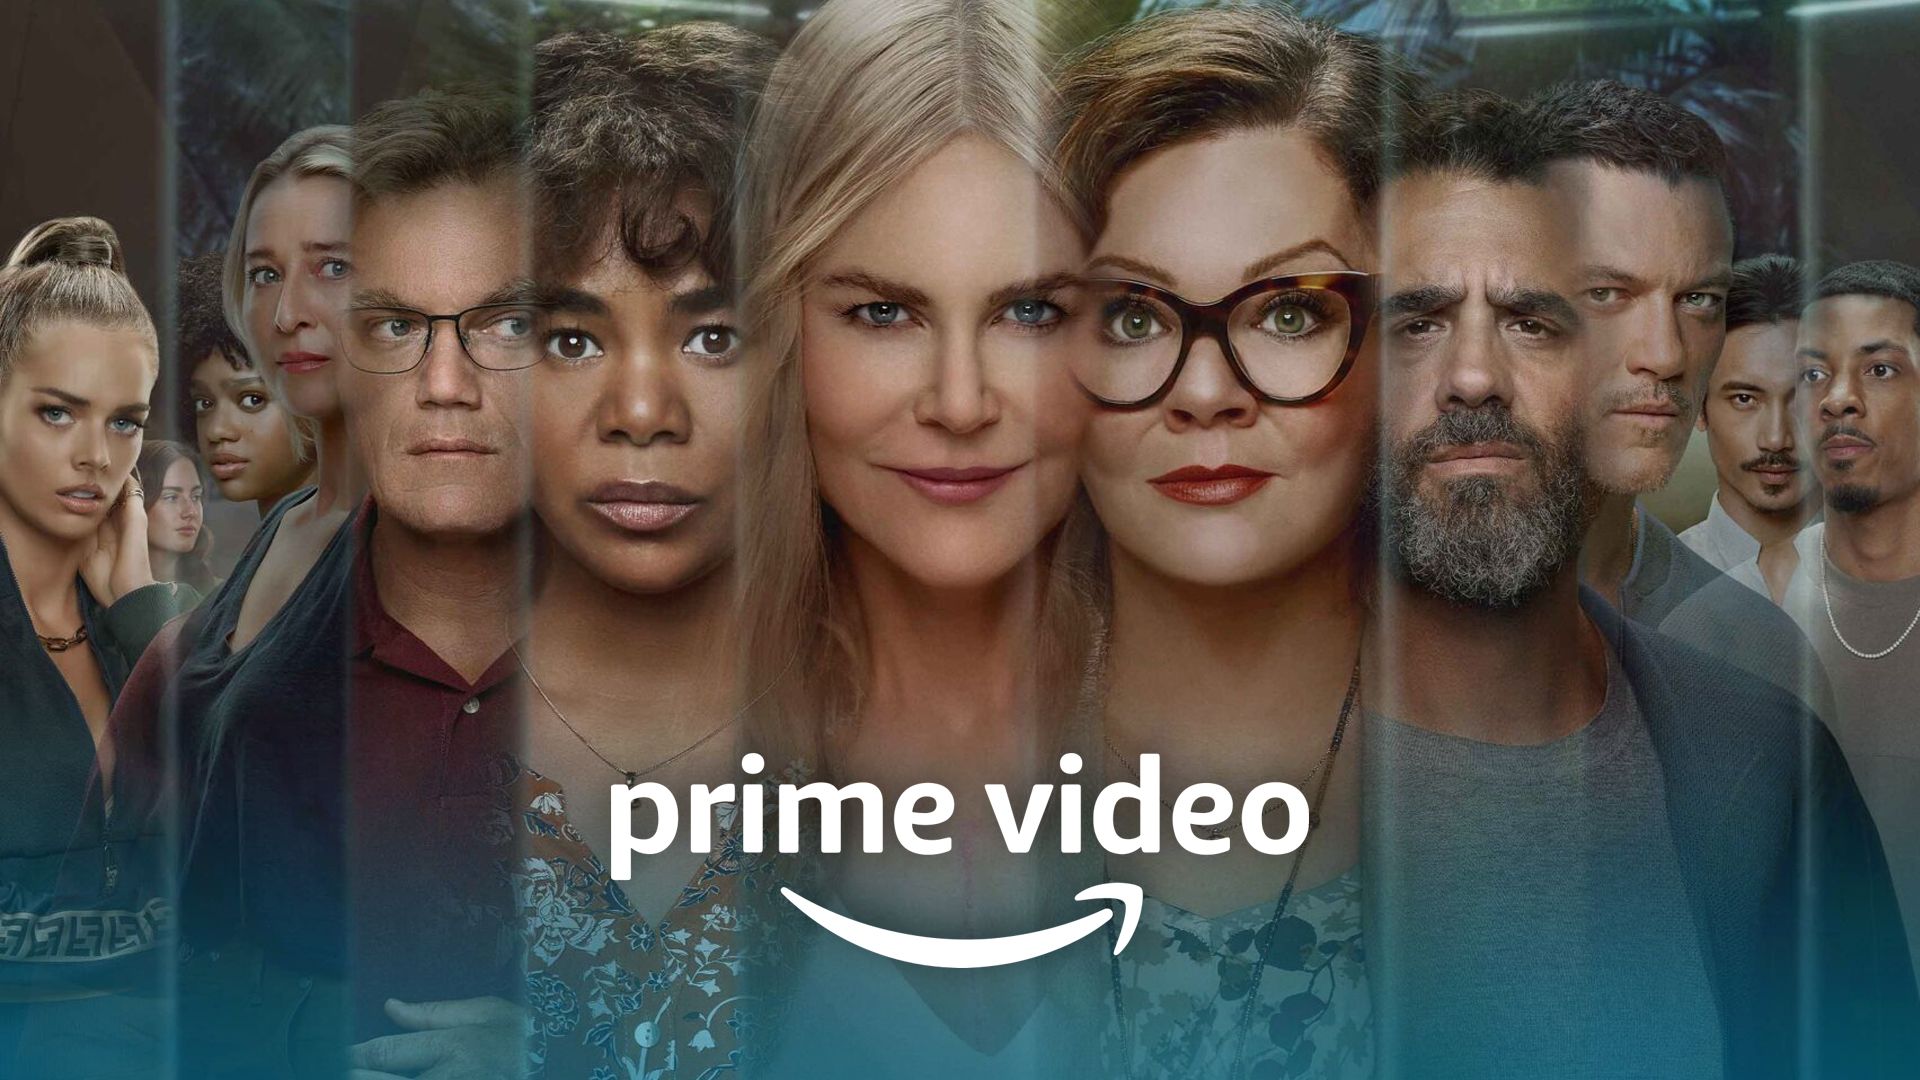 Amazon Prime Video (Nine perfect strangers)